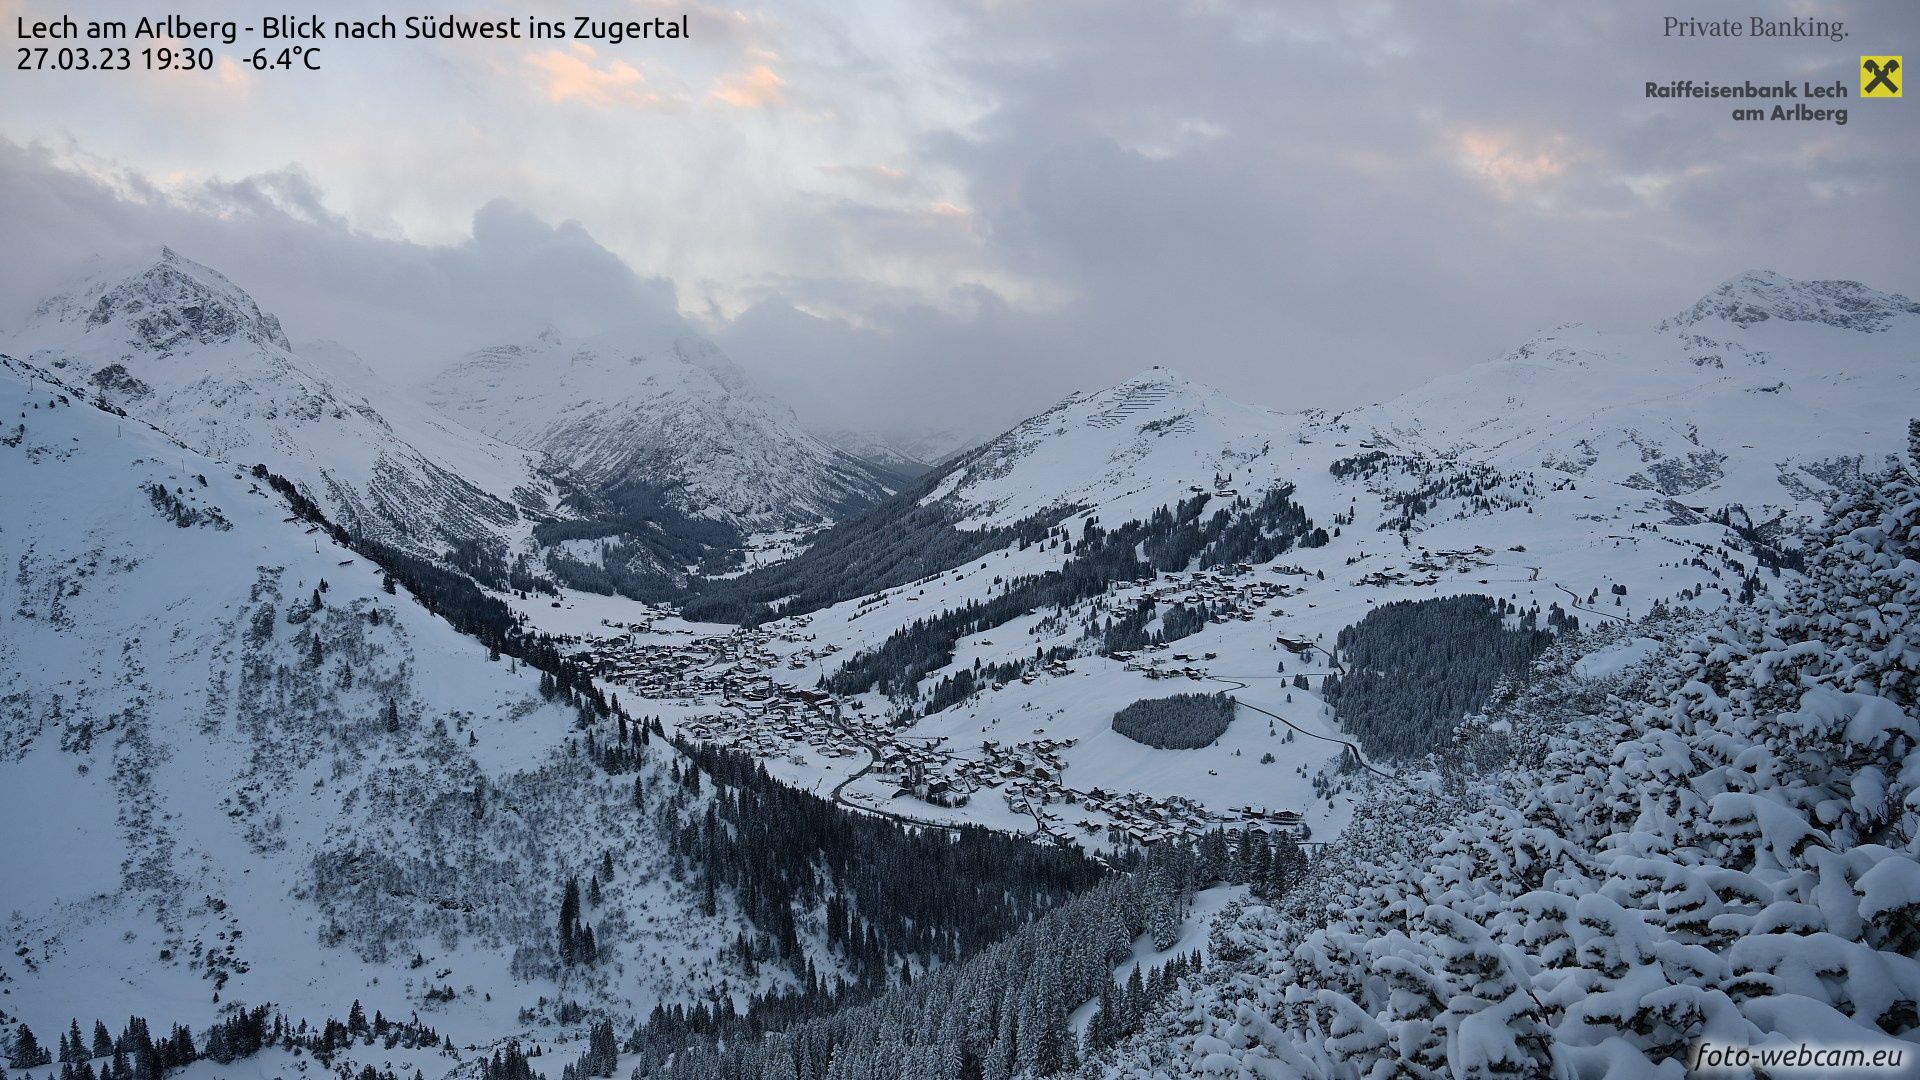 Winterwonderland in Lech (foto-webcam.eu)